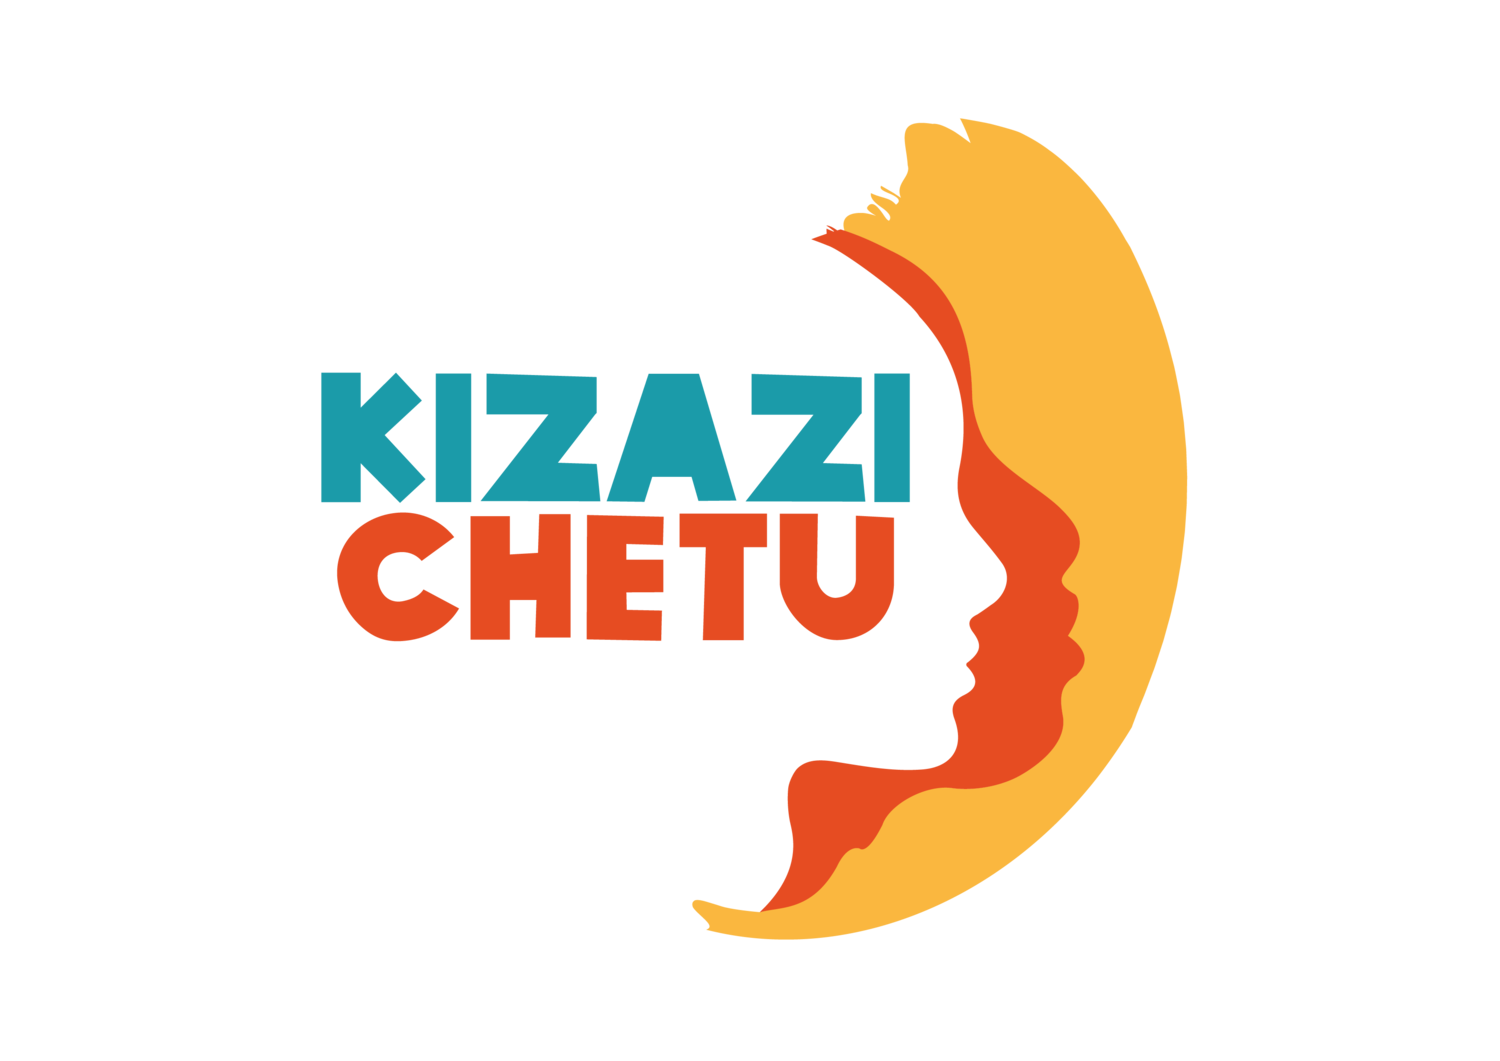 Kizazi Chetu